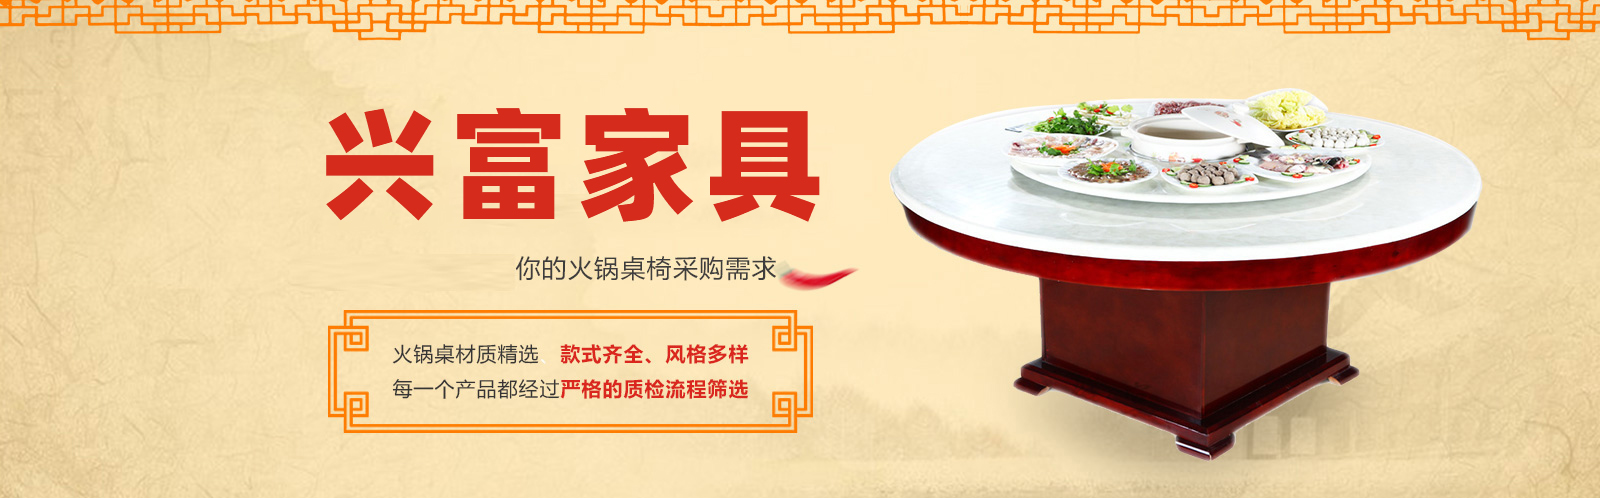 重慶火鍋桌